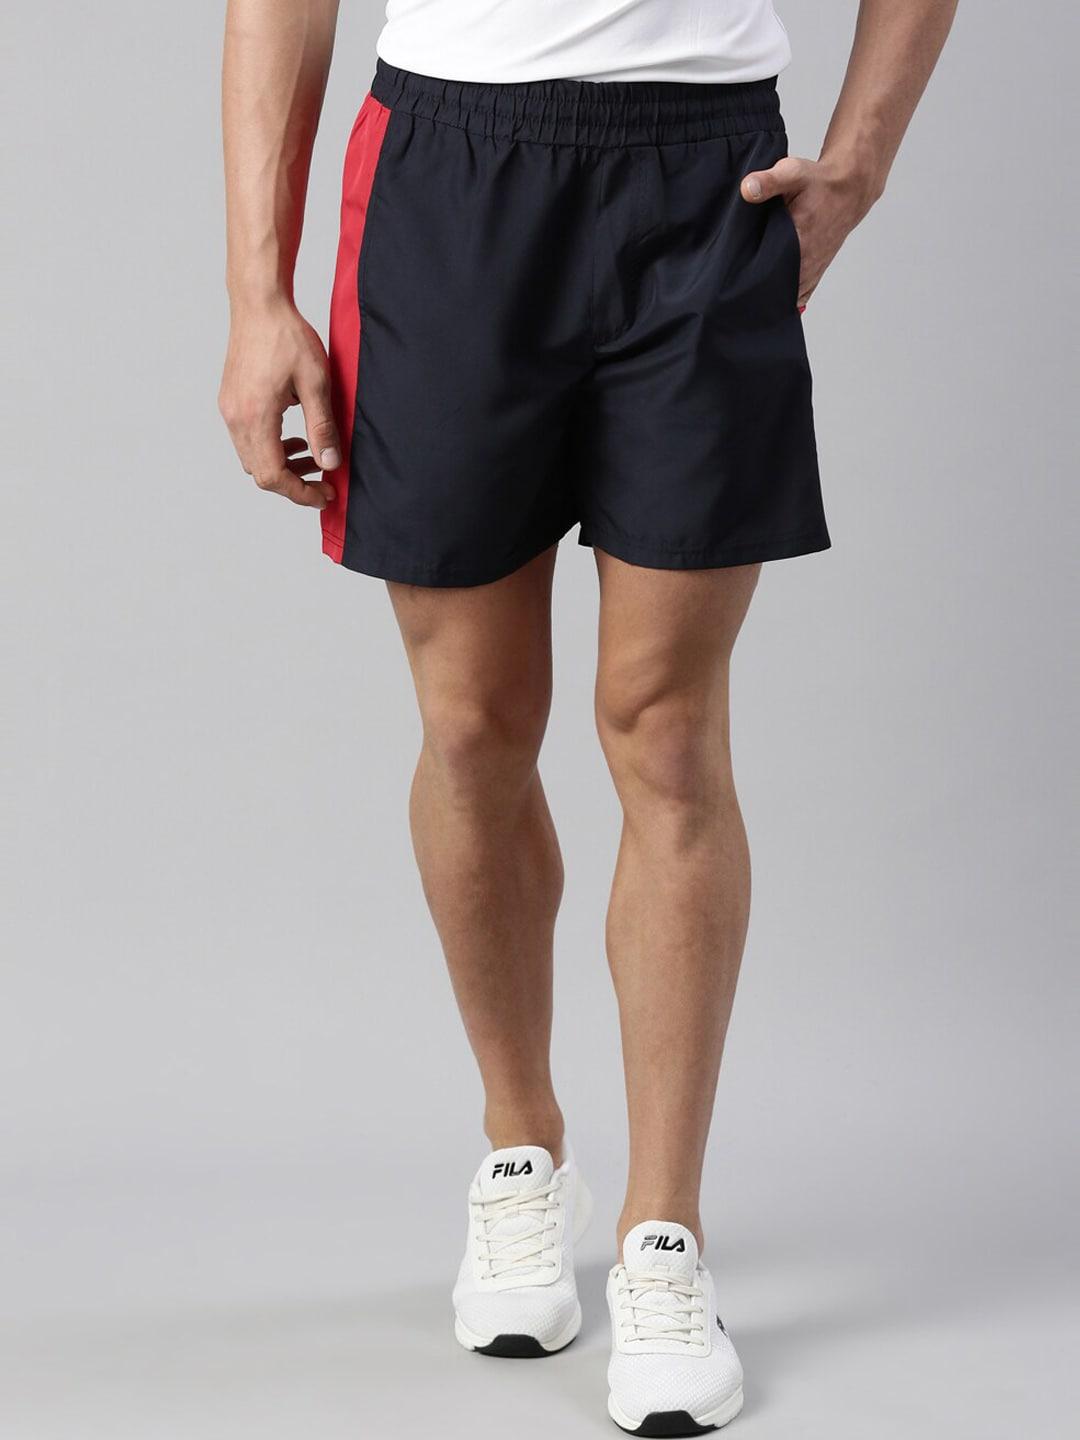 fila-men-black-cotton-training-sports-shorts